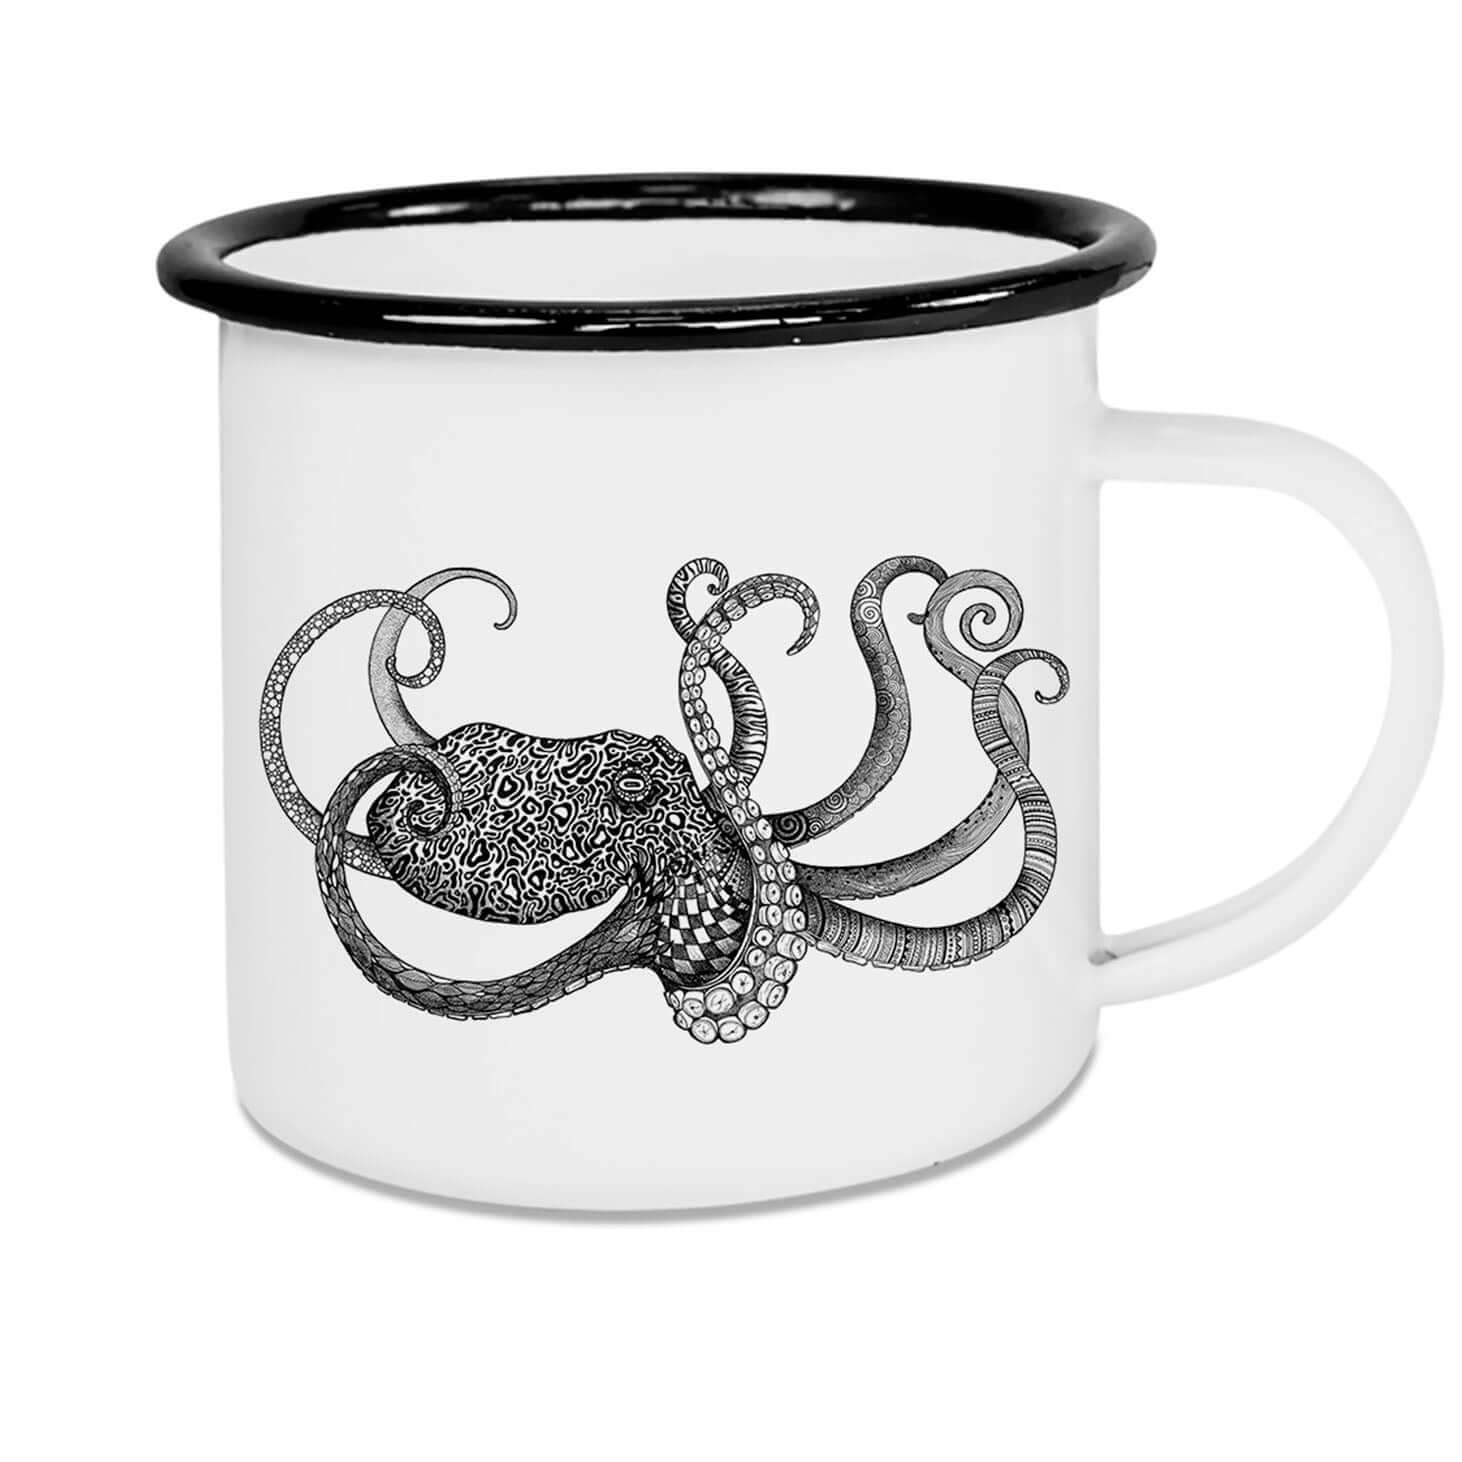 is er schilder Bel terug Ligarti emaille mok Octopus 300ml kopen? - Hetadreswebshop.nl